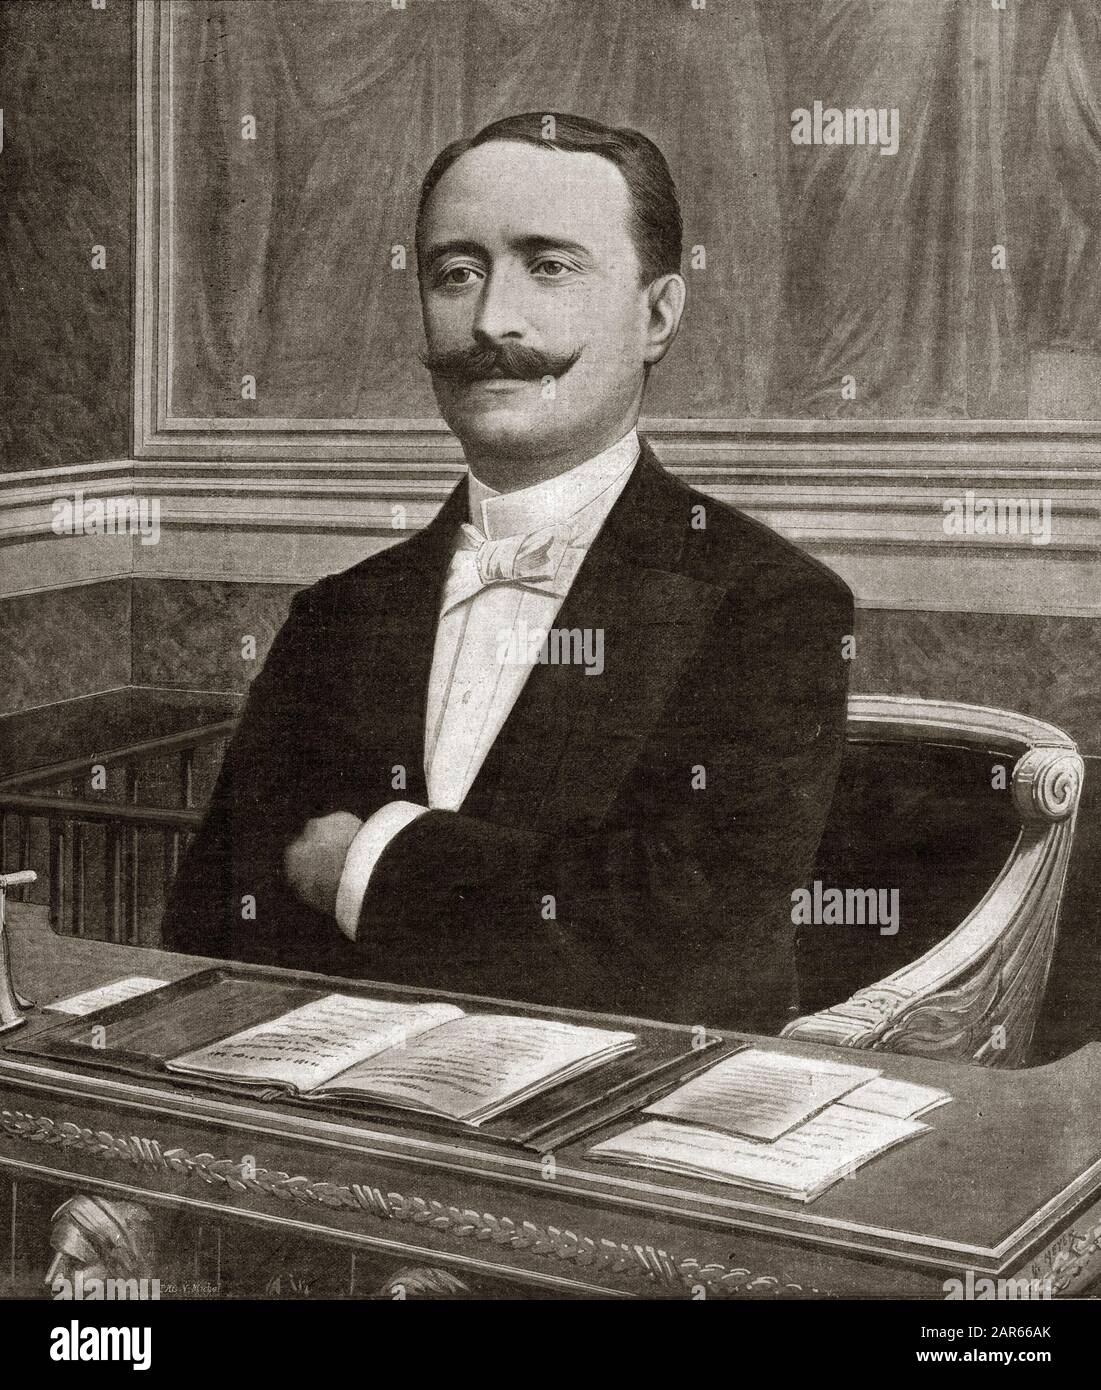 Le nouveau President de la chambre des deputes Paul Deschanel (1855-1922) - Titelseite der französischen Zeitung "Le Petit Journal" 26. juni 1898: Paul De Stockfoto